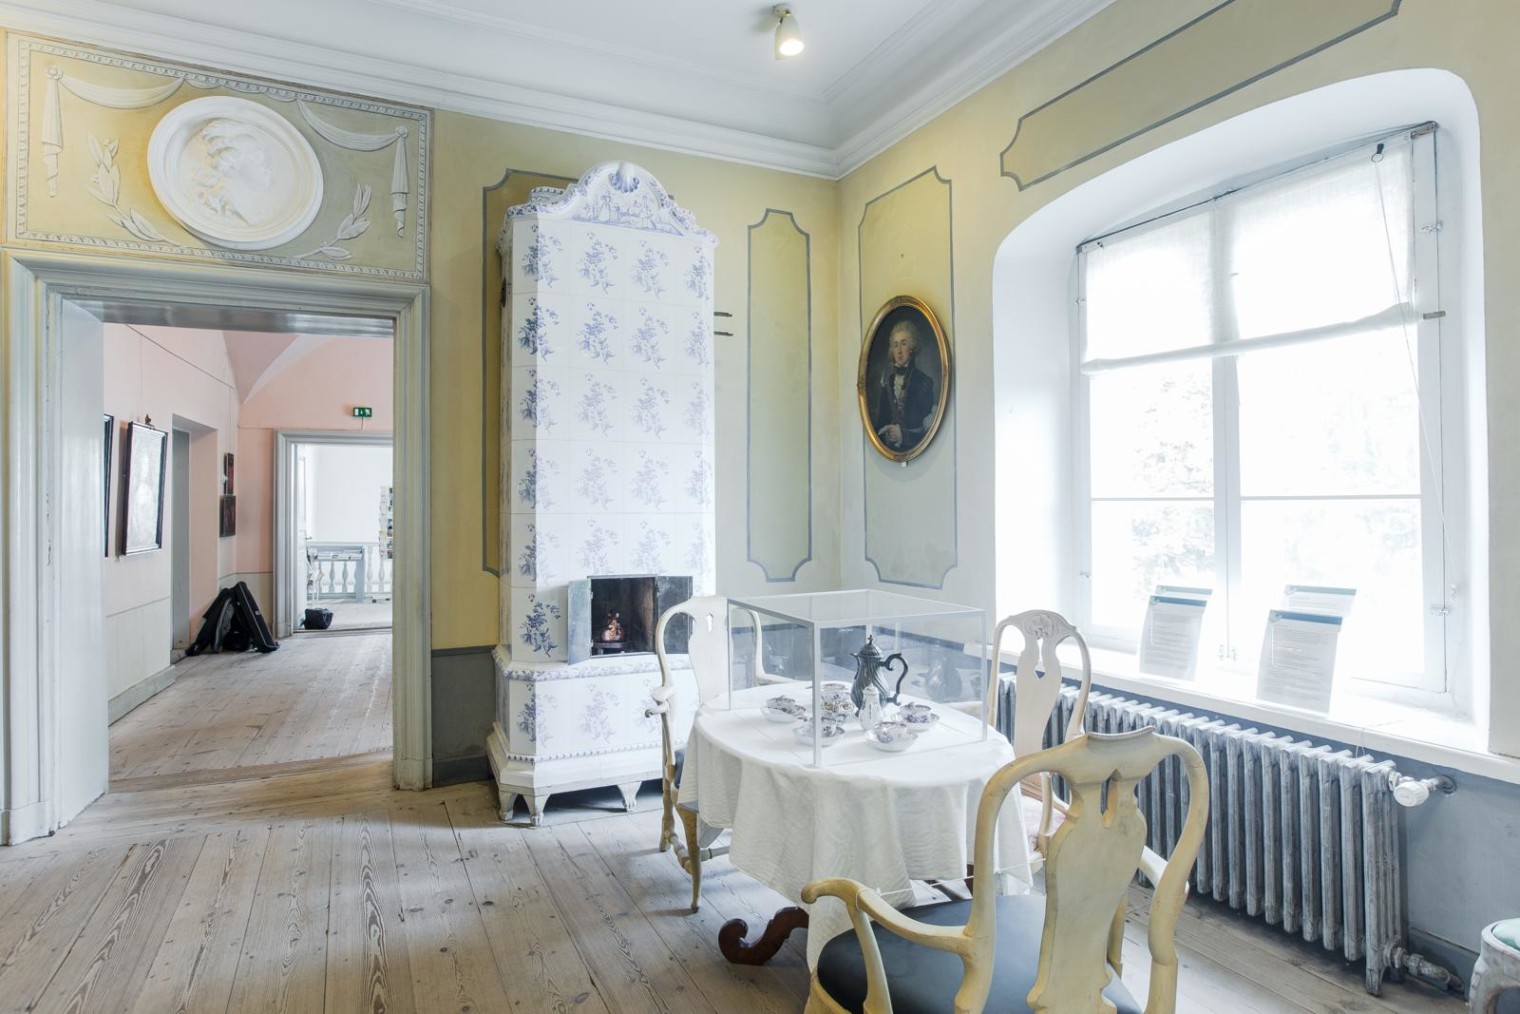 1700-luvun rokokoo tyyliin sisustettu huone, jossa katettu kahvipöytä. Kahvipöydän takana kaakeliuuni sekä ikkuna.